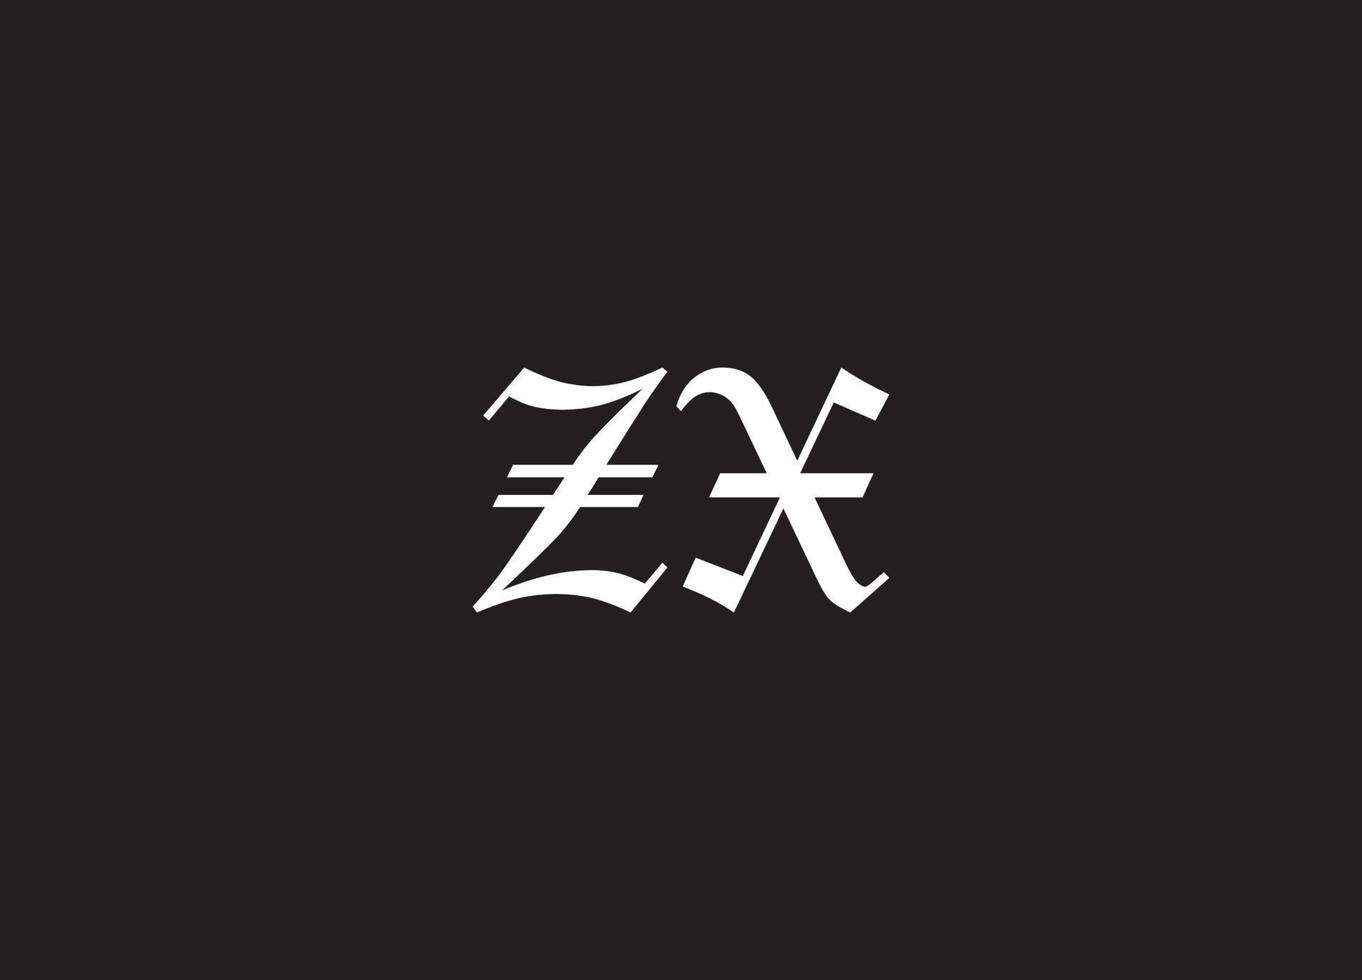 ZX logo design vector